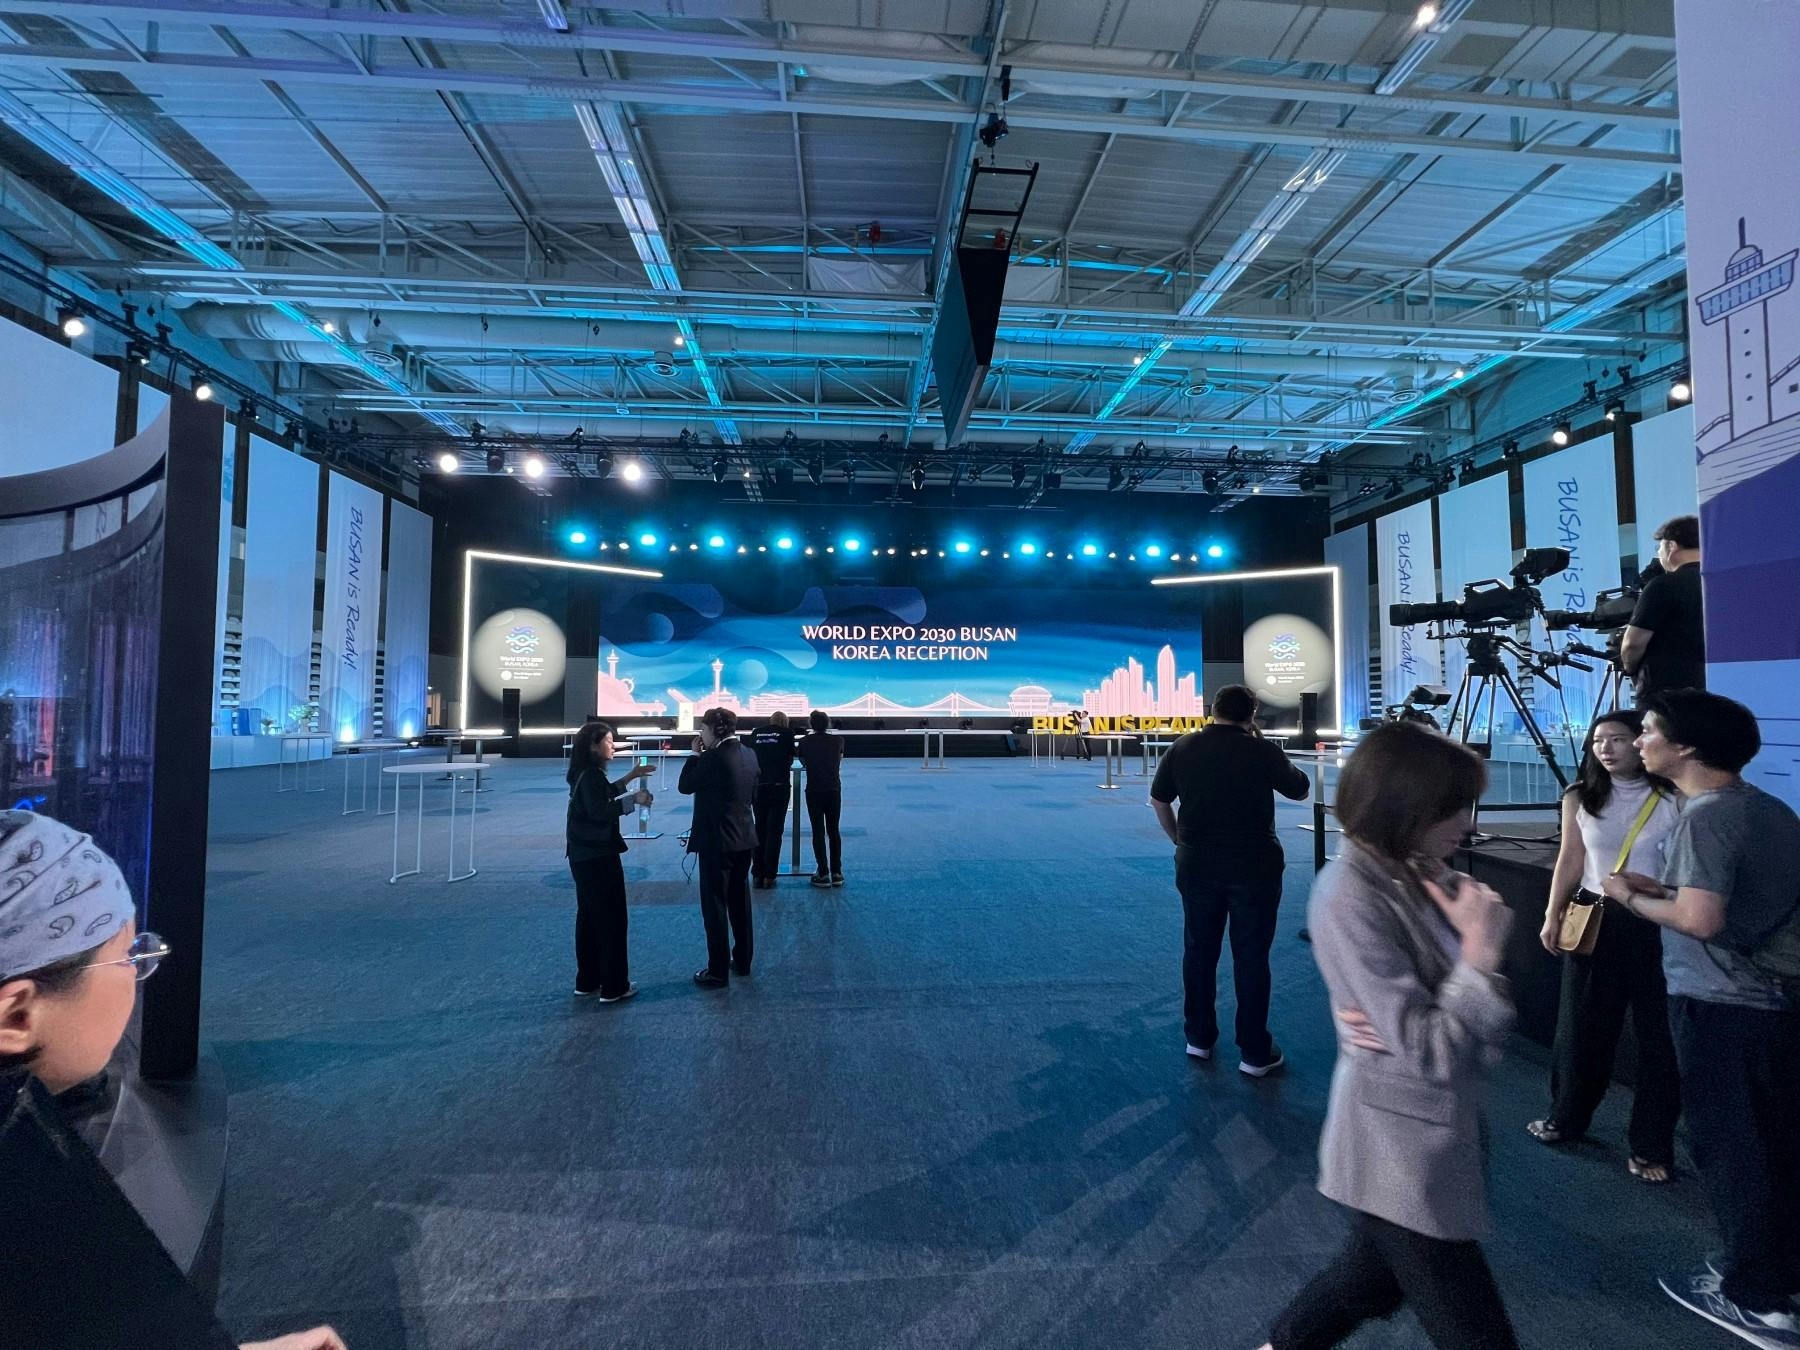 Die Event Halle wurde von MDL expo mit einer großen Leinwand und riesigen Bühne für Vorträge ausgestattet.